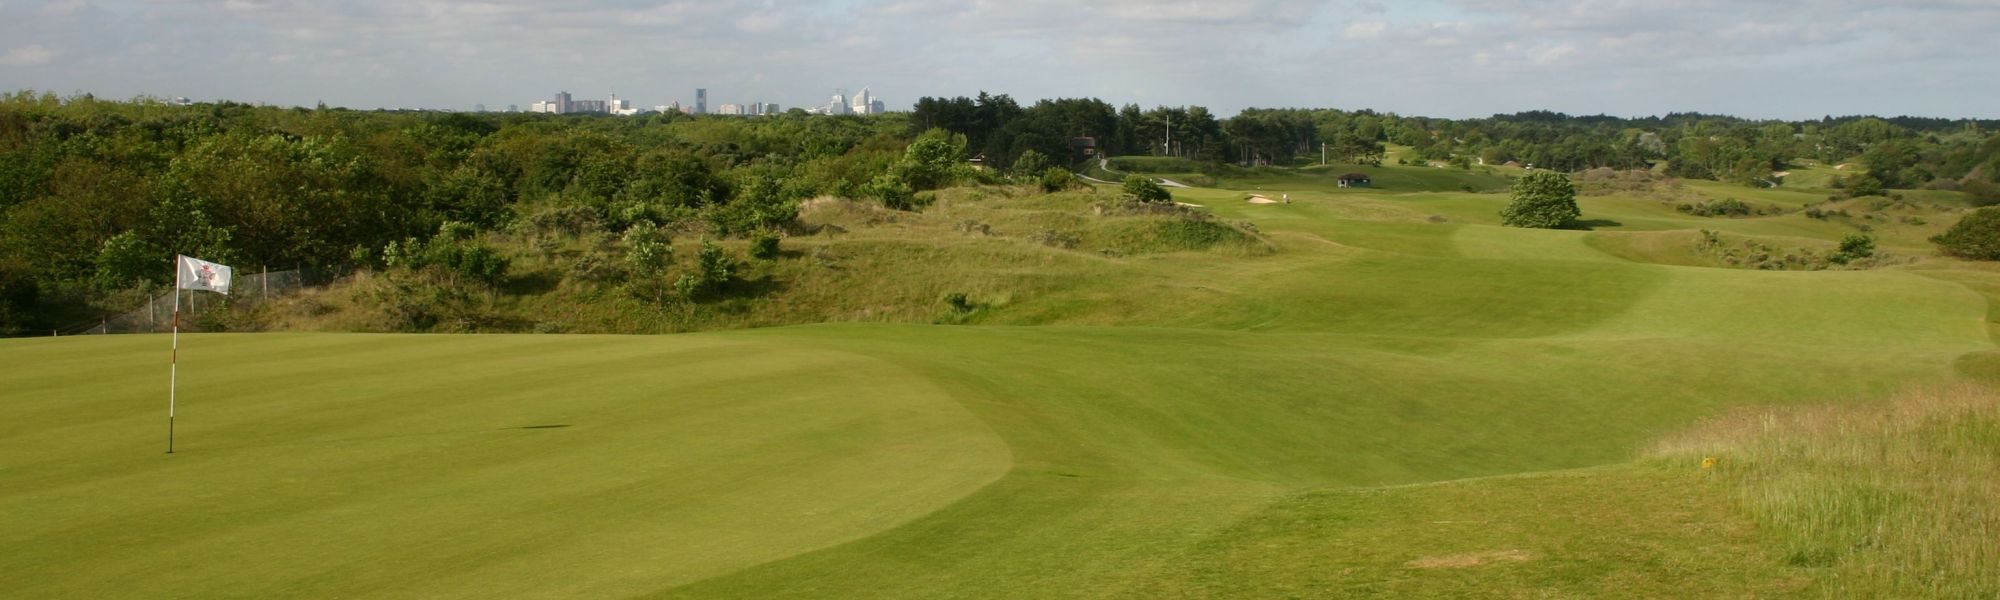 Haagsche golf club